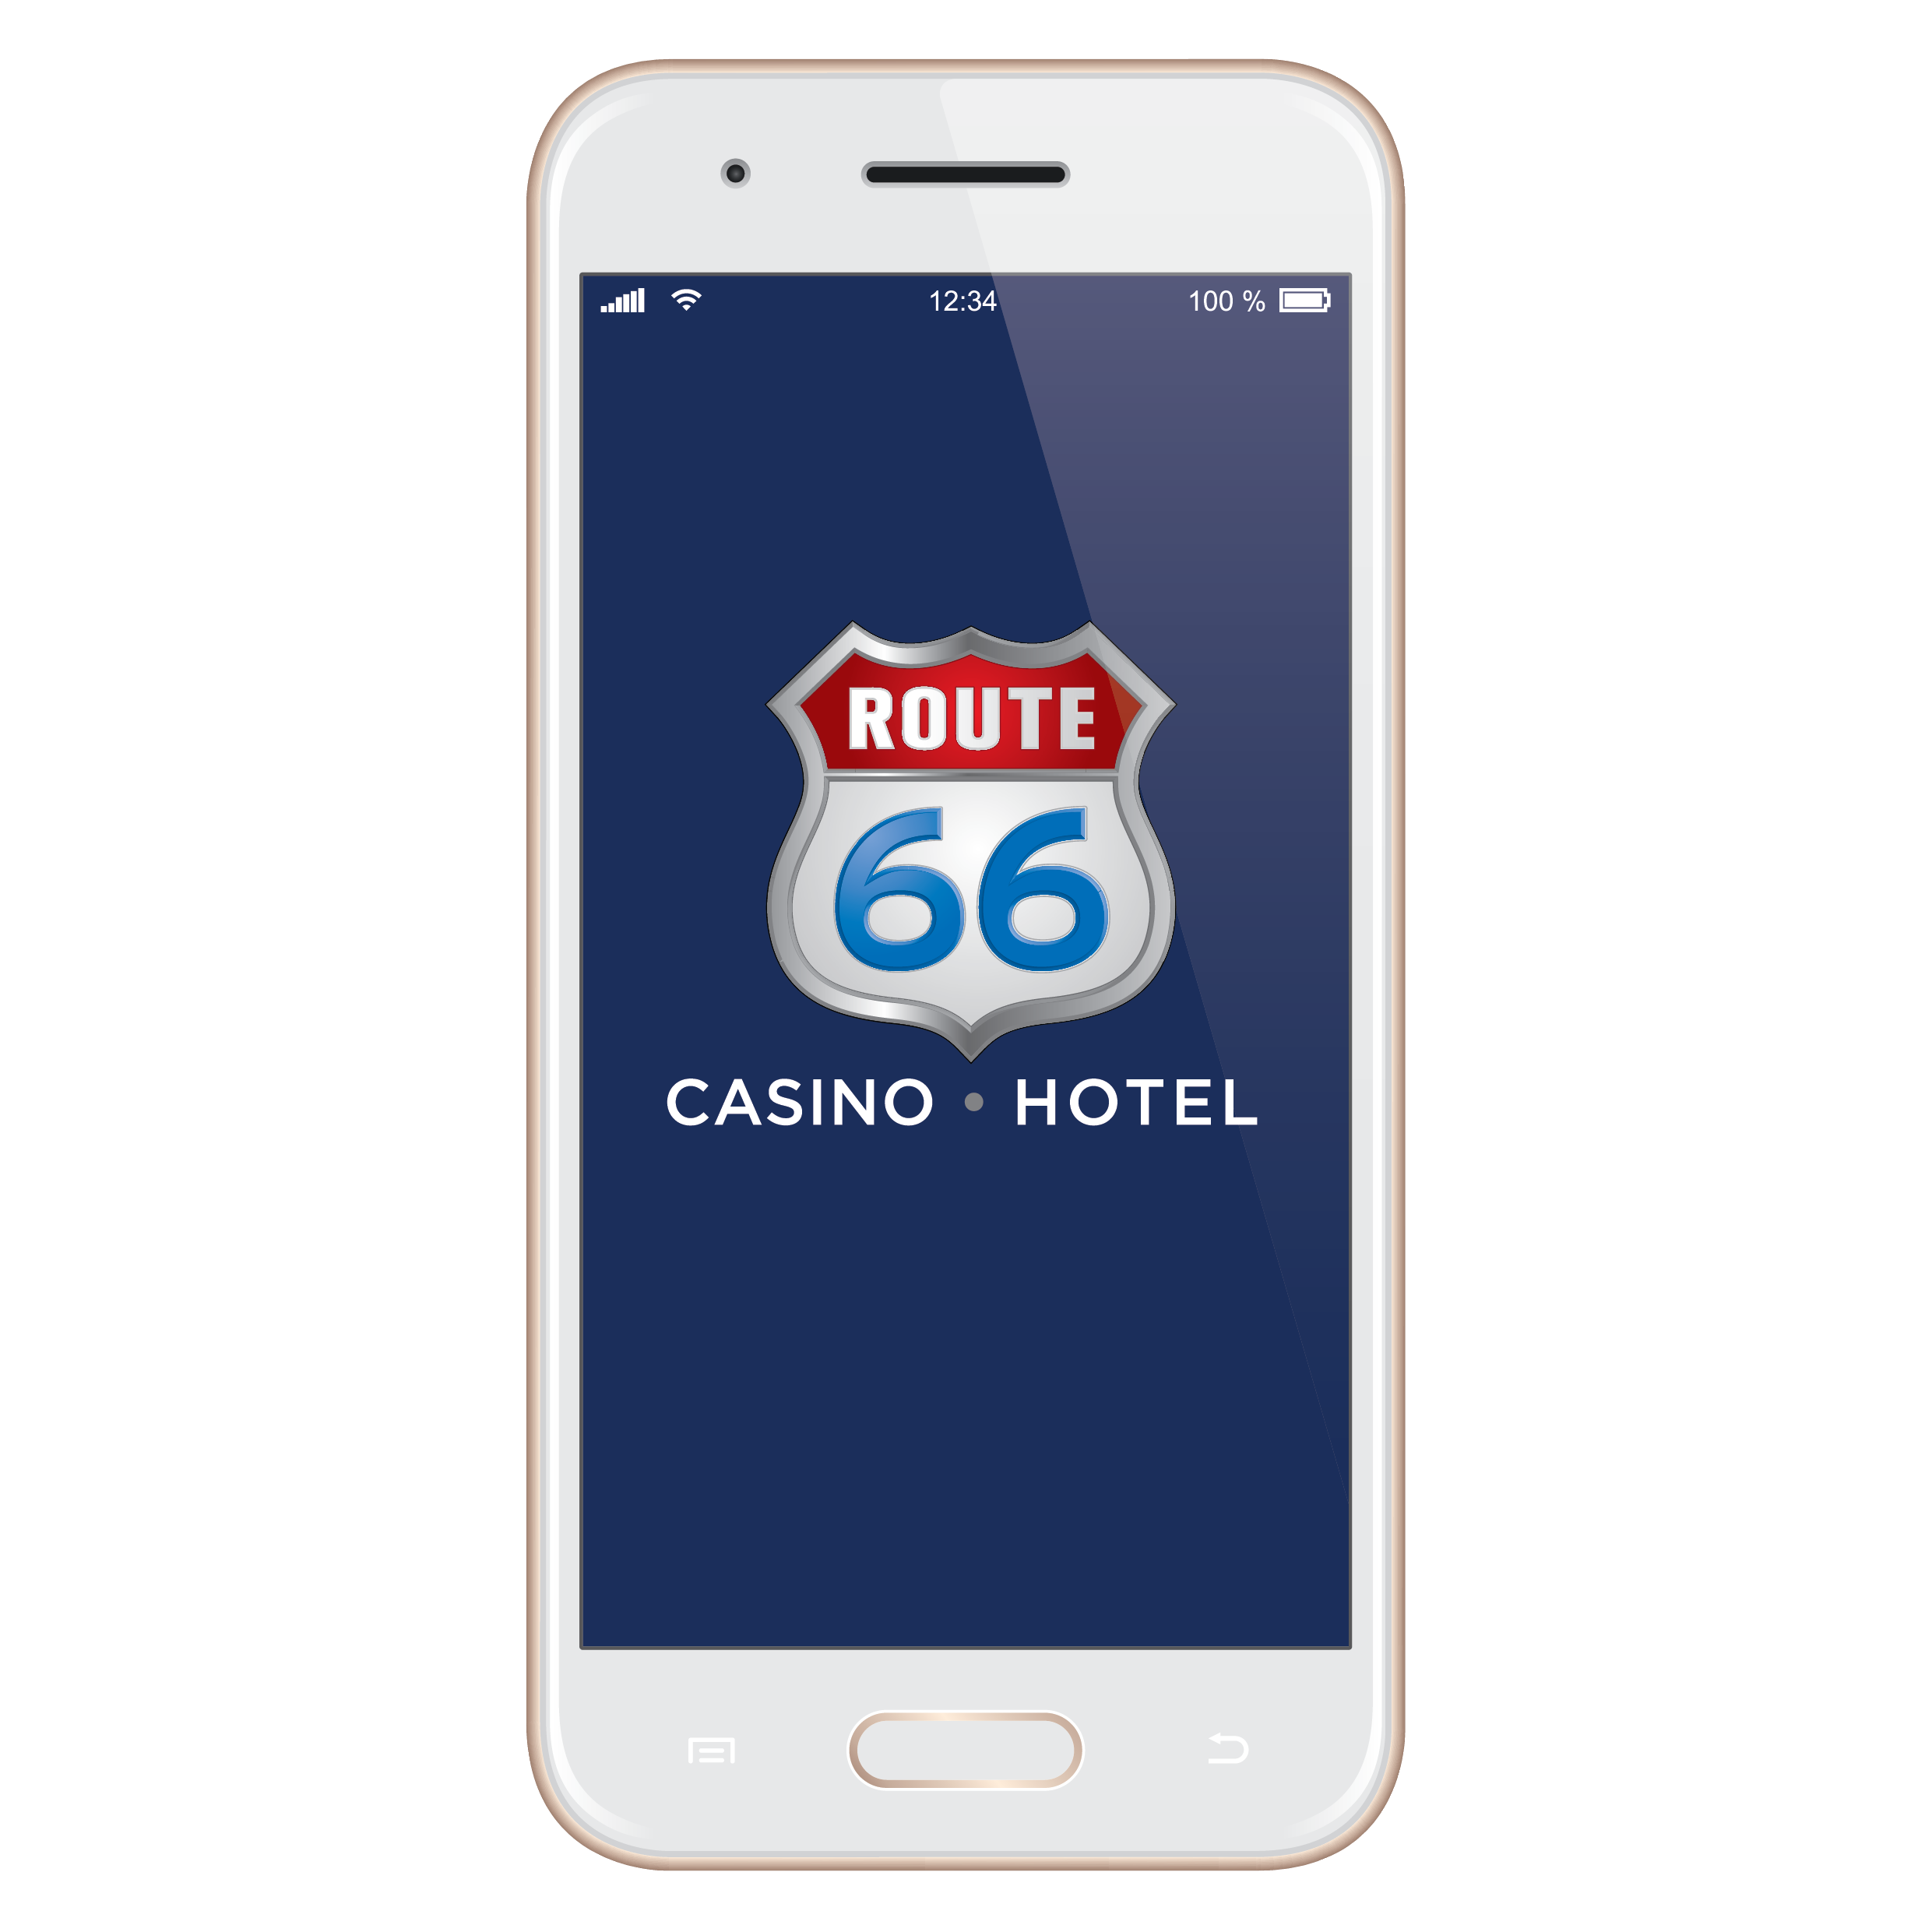 Route 66 Casino Hotel mobile app